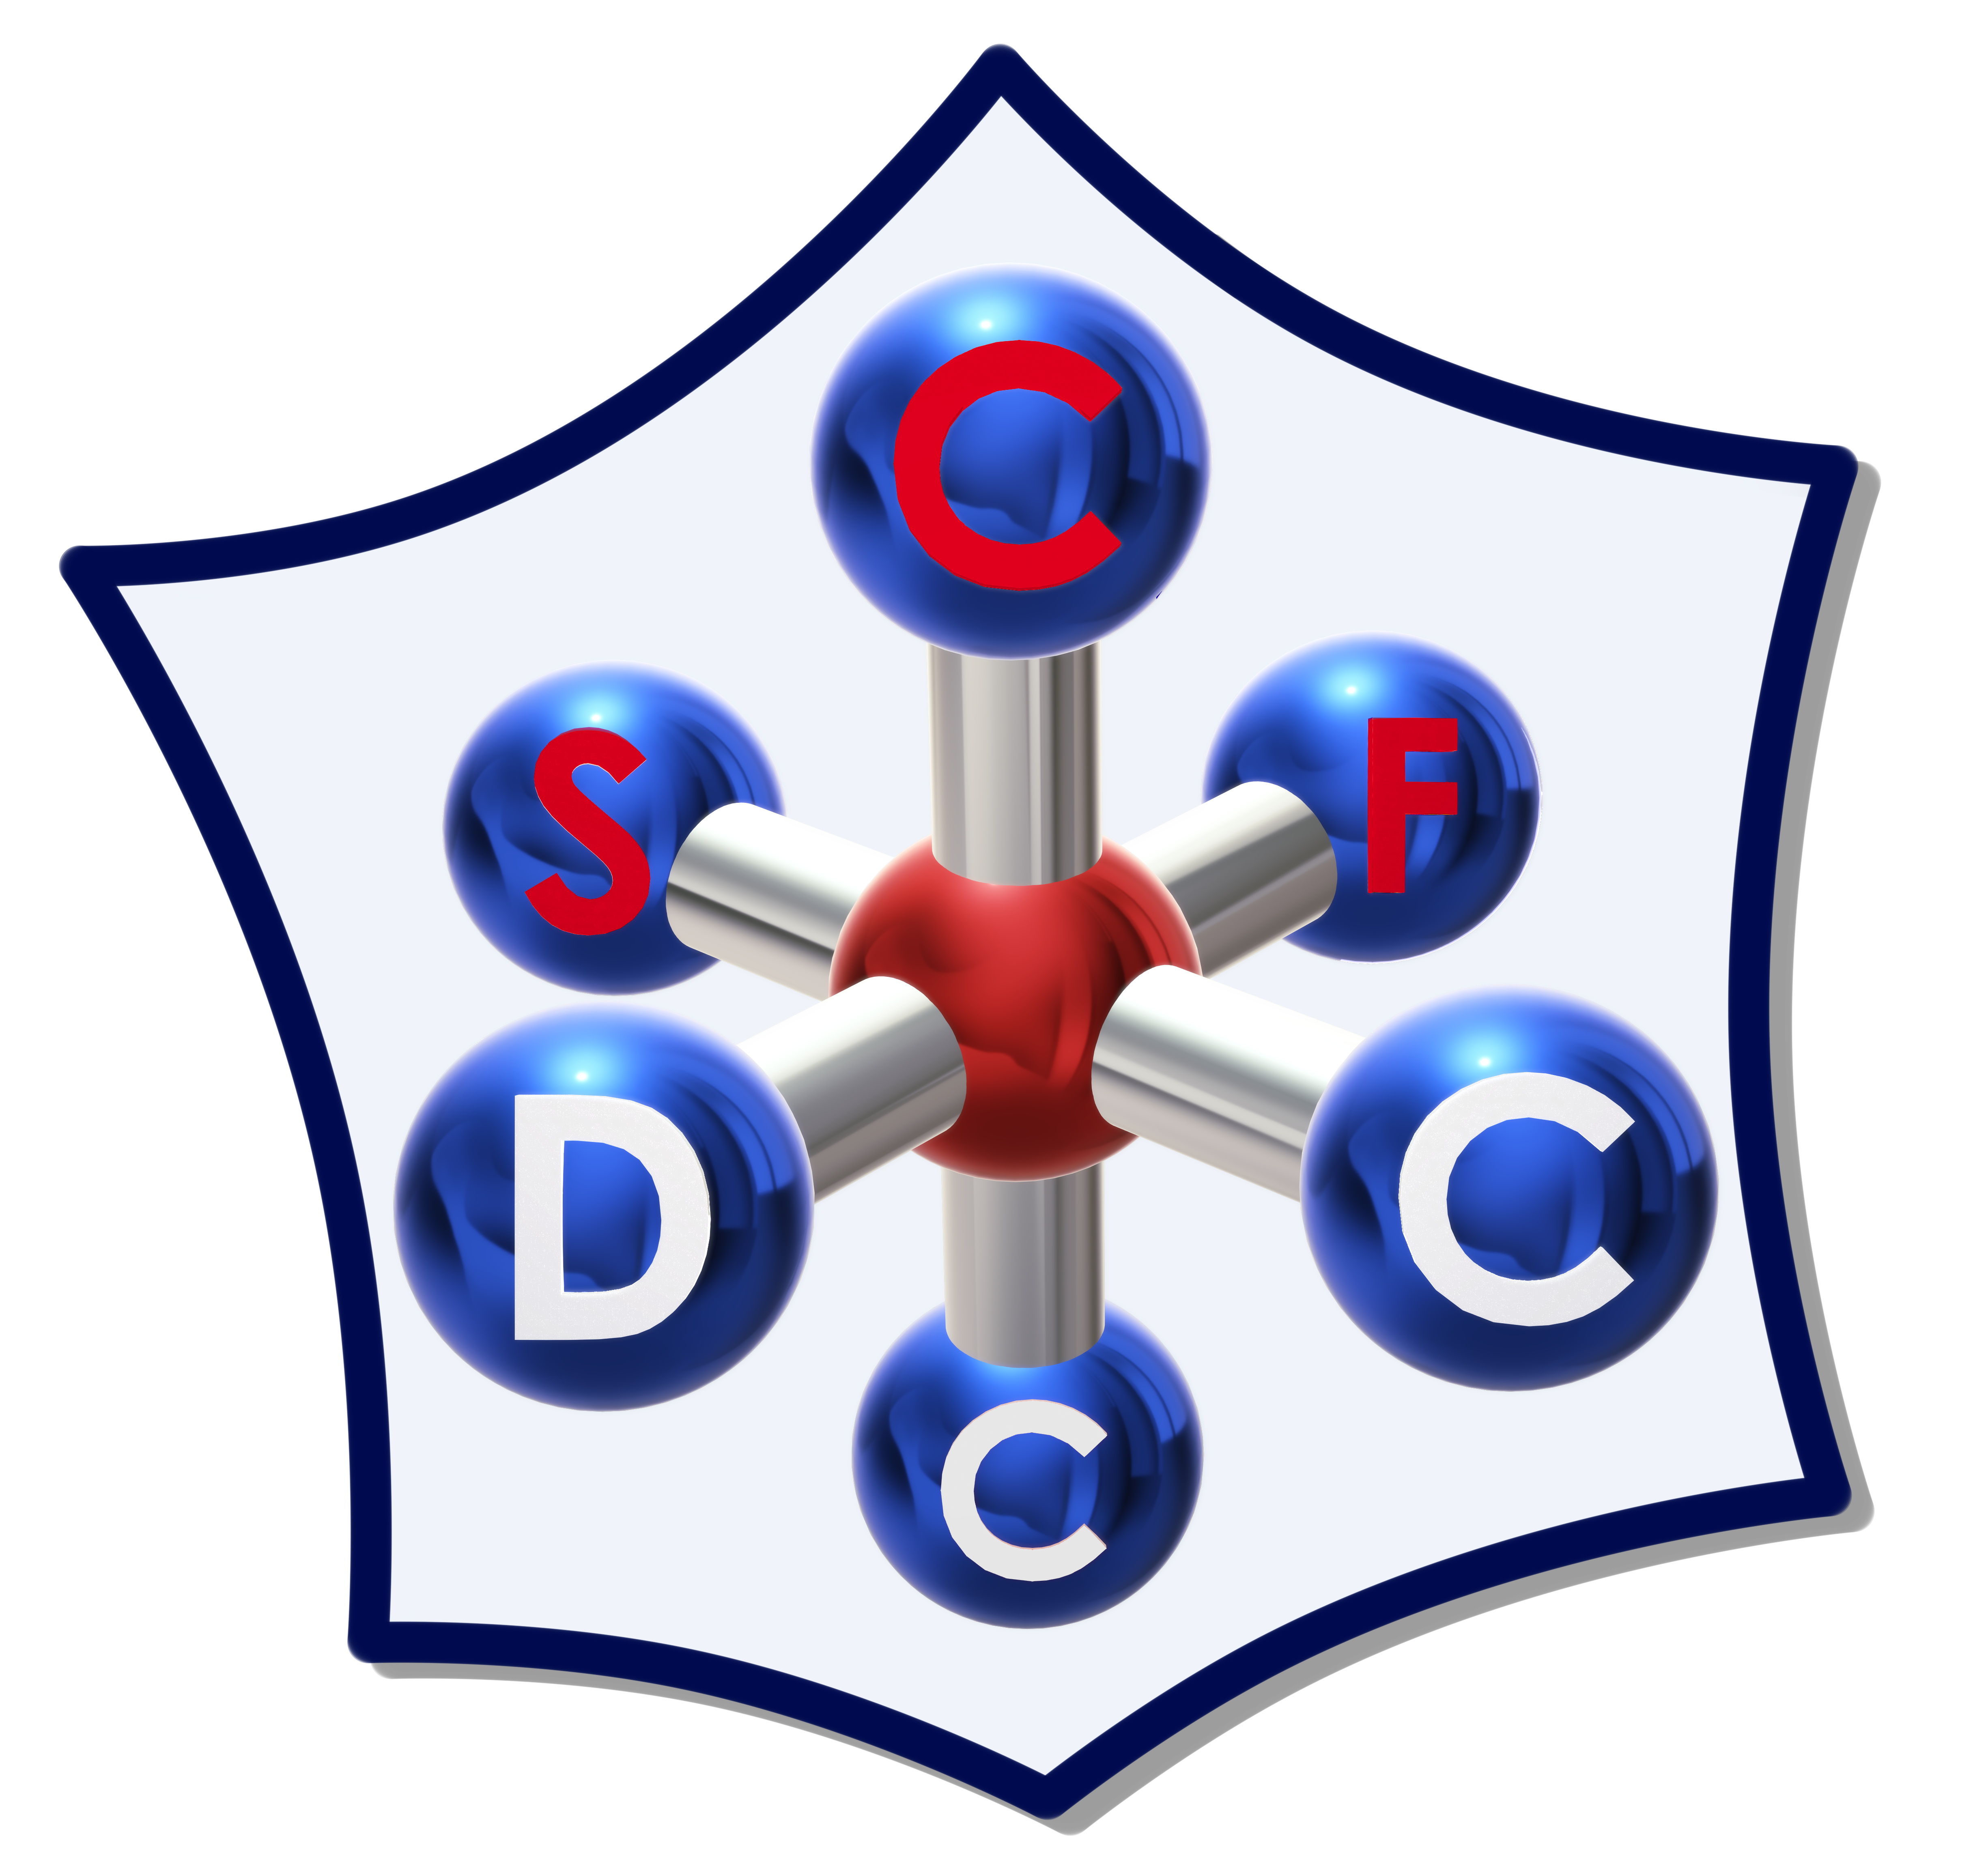 Société Chimique de France - Division de Chimie de Coordination